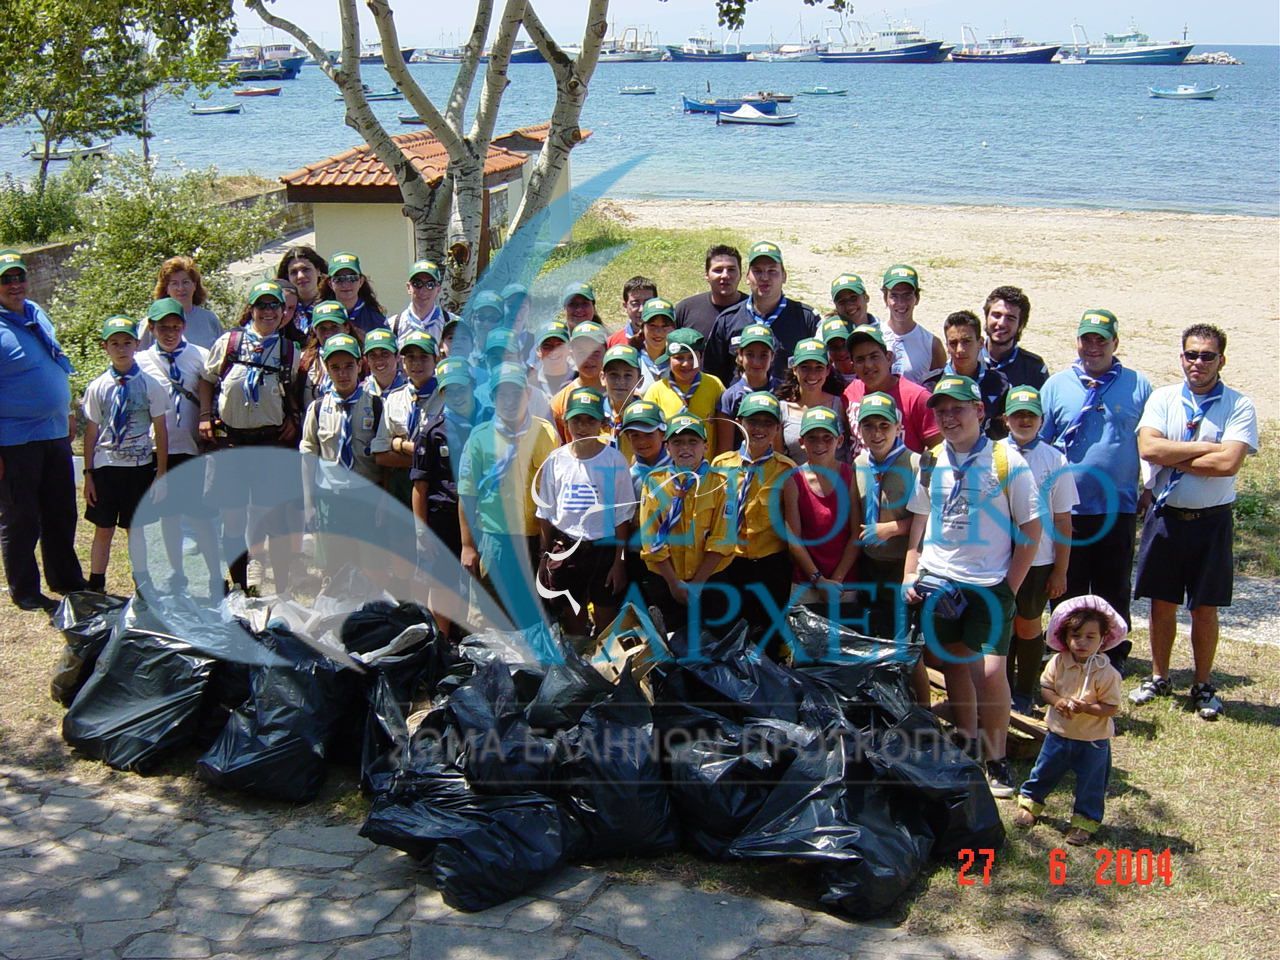 Πρόσκοποι της Θεσσαλονίκης με τα σκουπίδια που περισυνέλεξαν από την παραλία της Καλαμαρίας κατά την δράση "Καθαρές Παραλίες" το 2004.